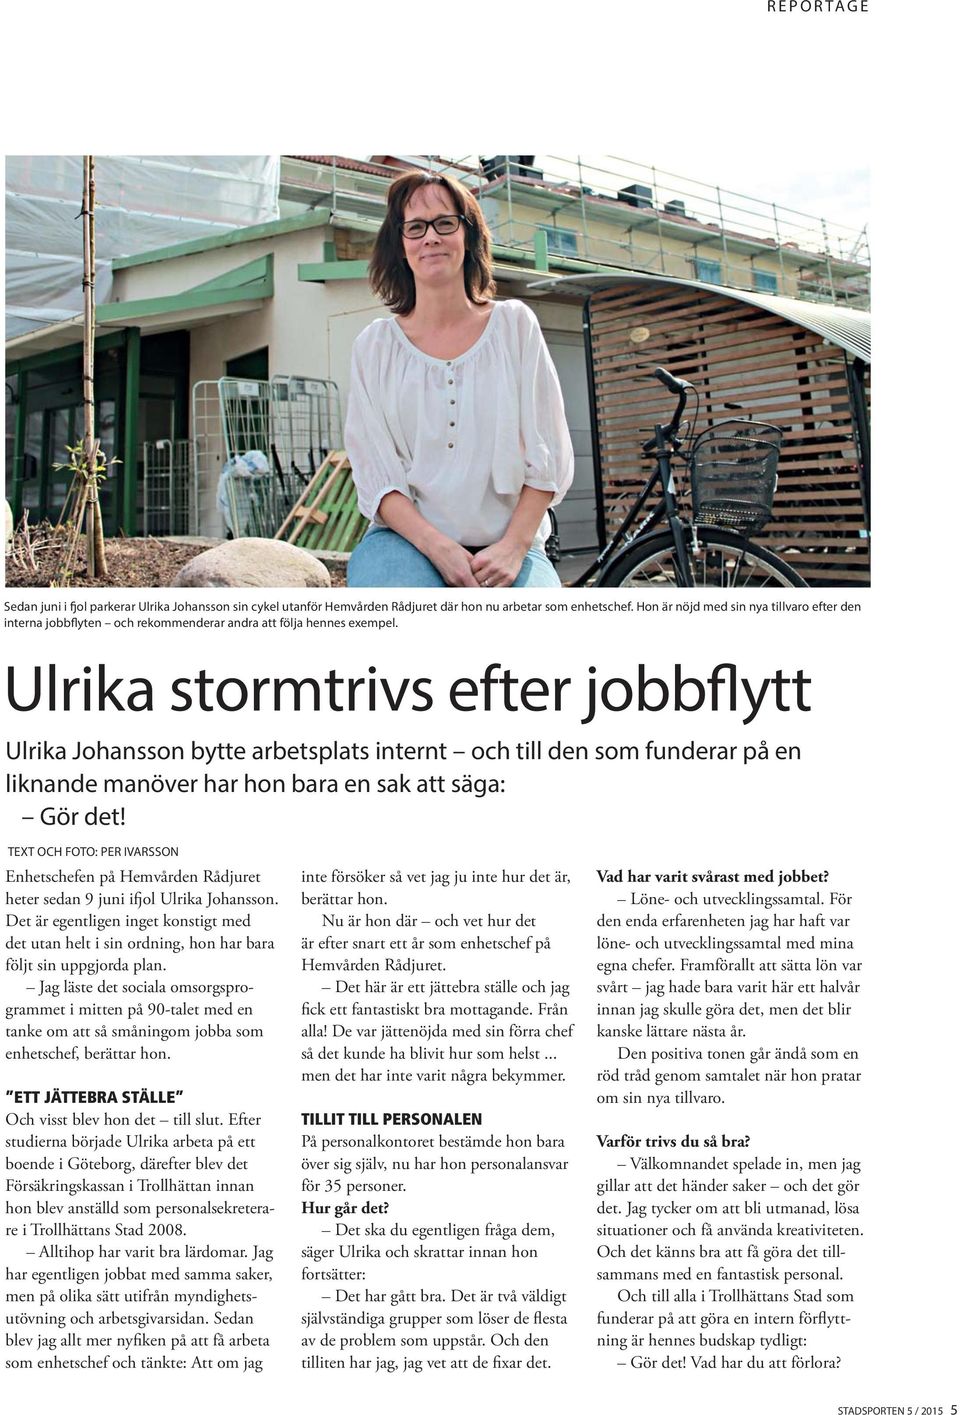 Ulrika stormtrivs efter jobbflytt Ulrika Johansson bytte arbetsplats internt och till den som funderar på en liknande manöver har hon bara en sak att säga: Gör det!